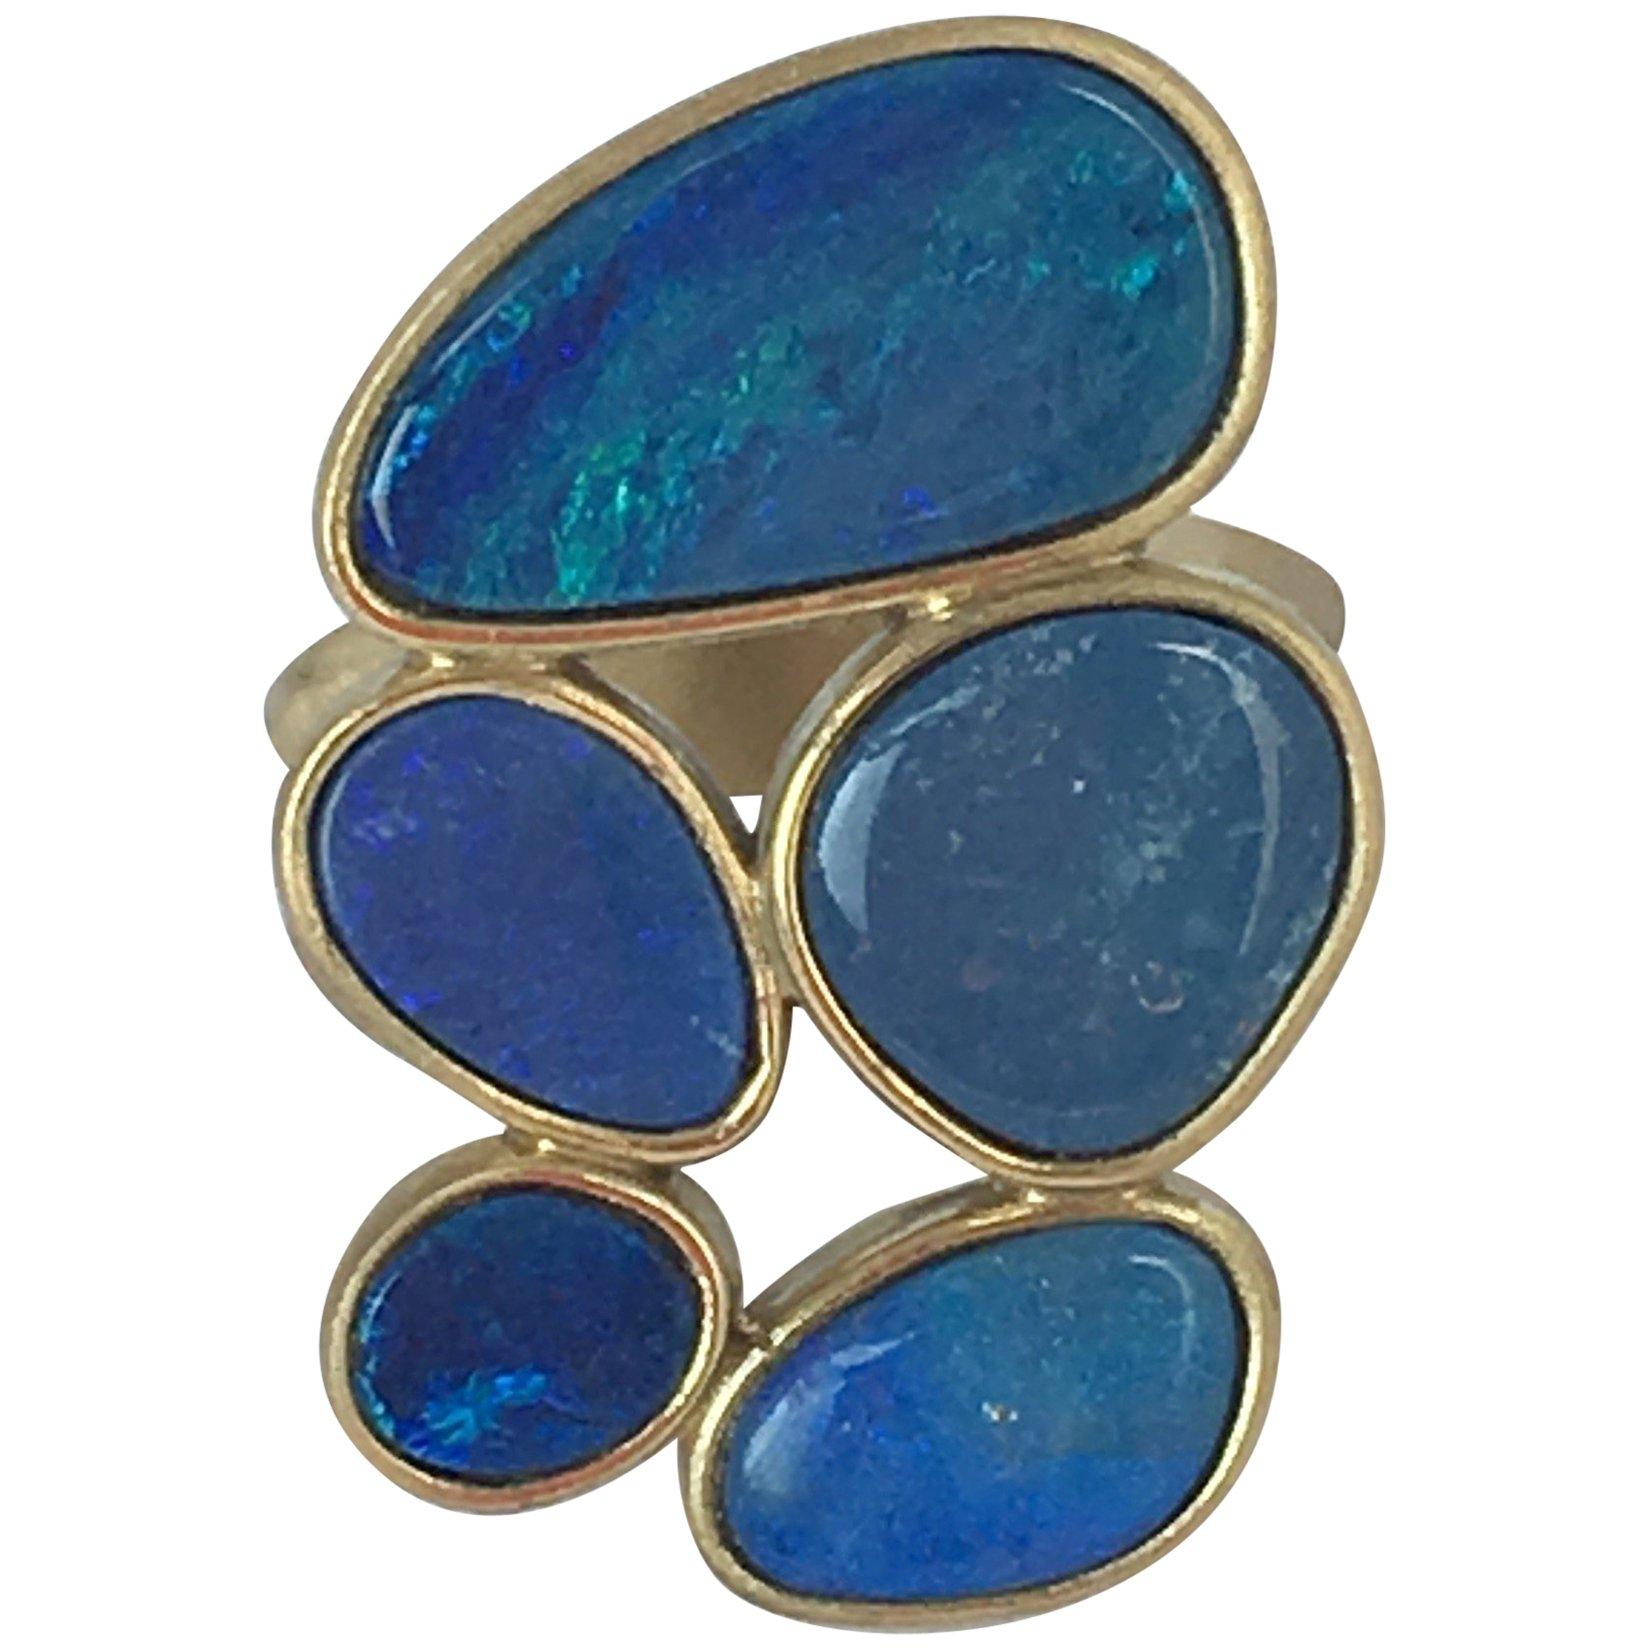  Australian Blu Opal Doublette 18 Karat Gold Ring